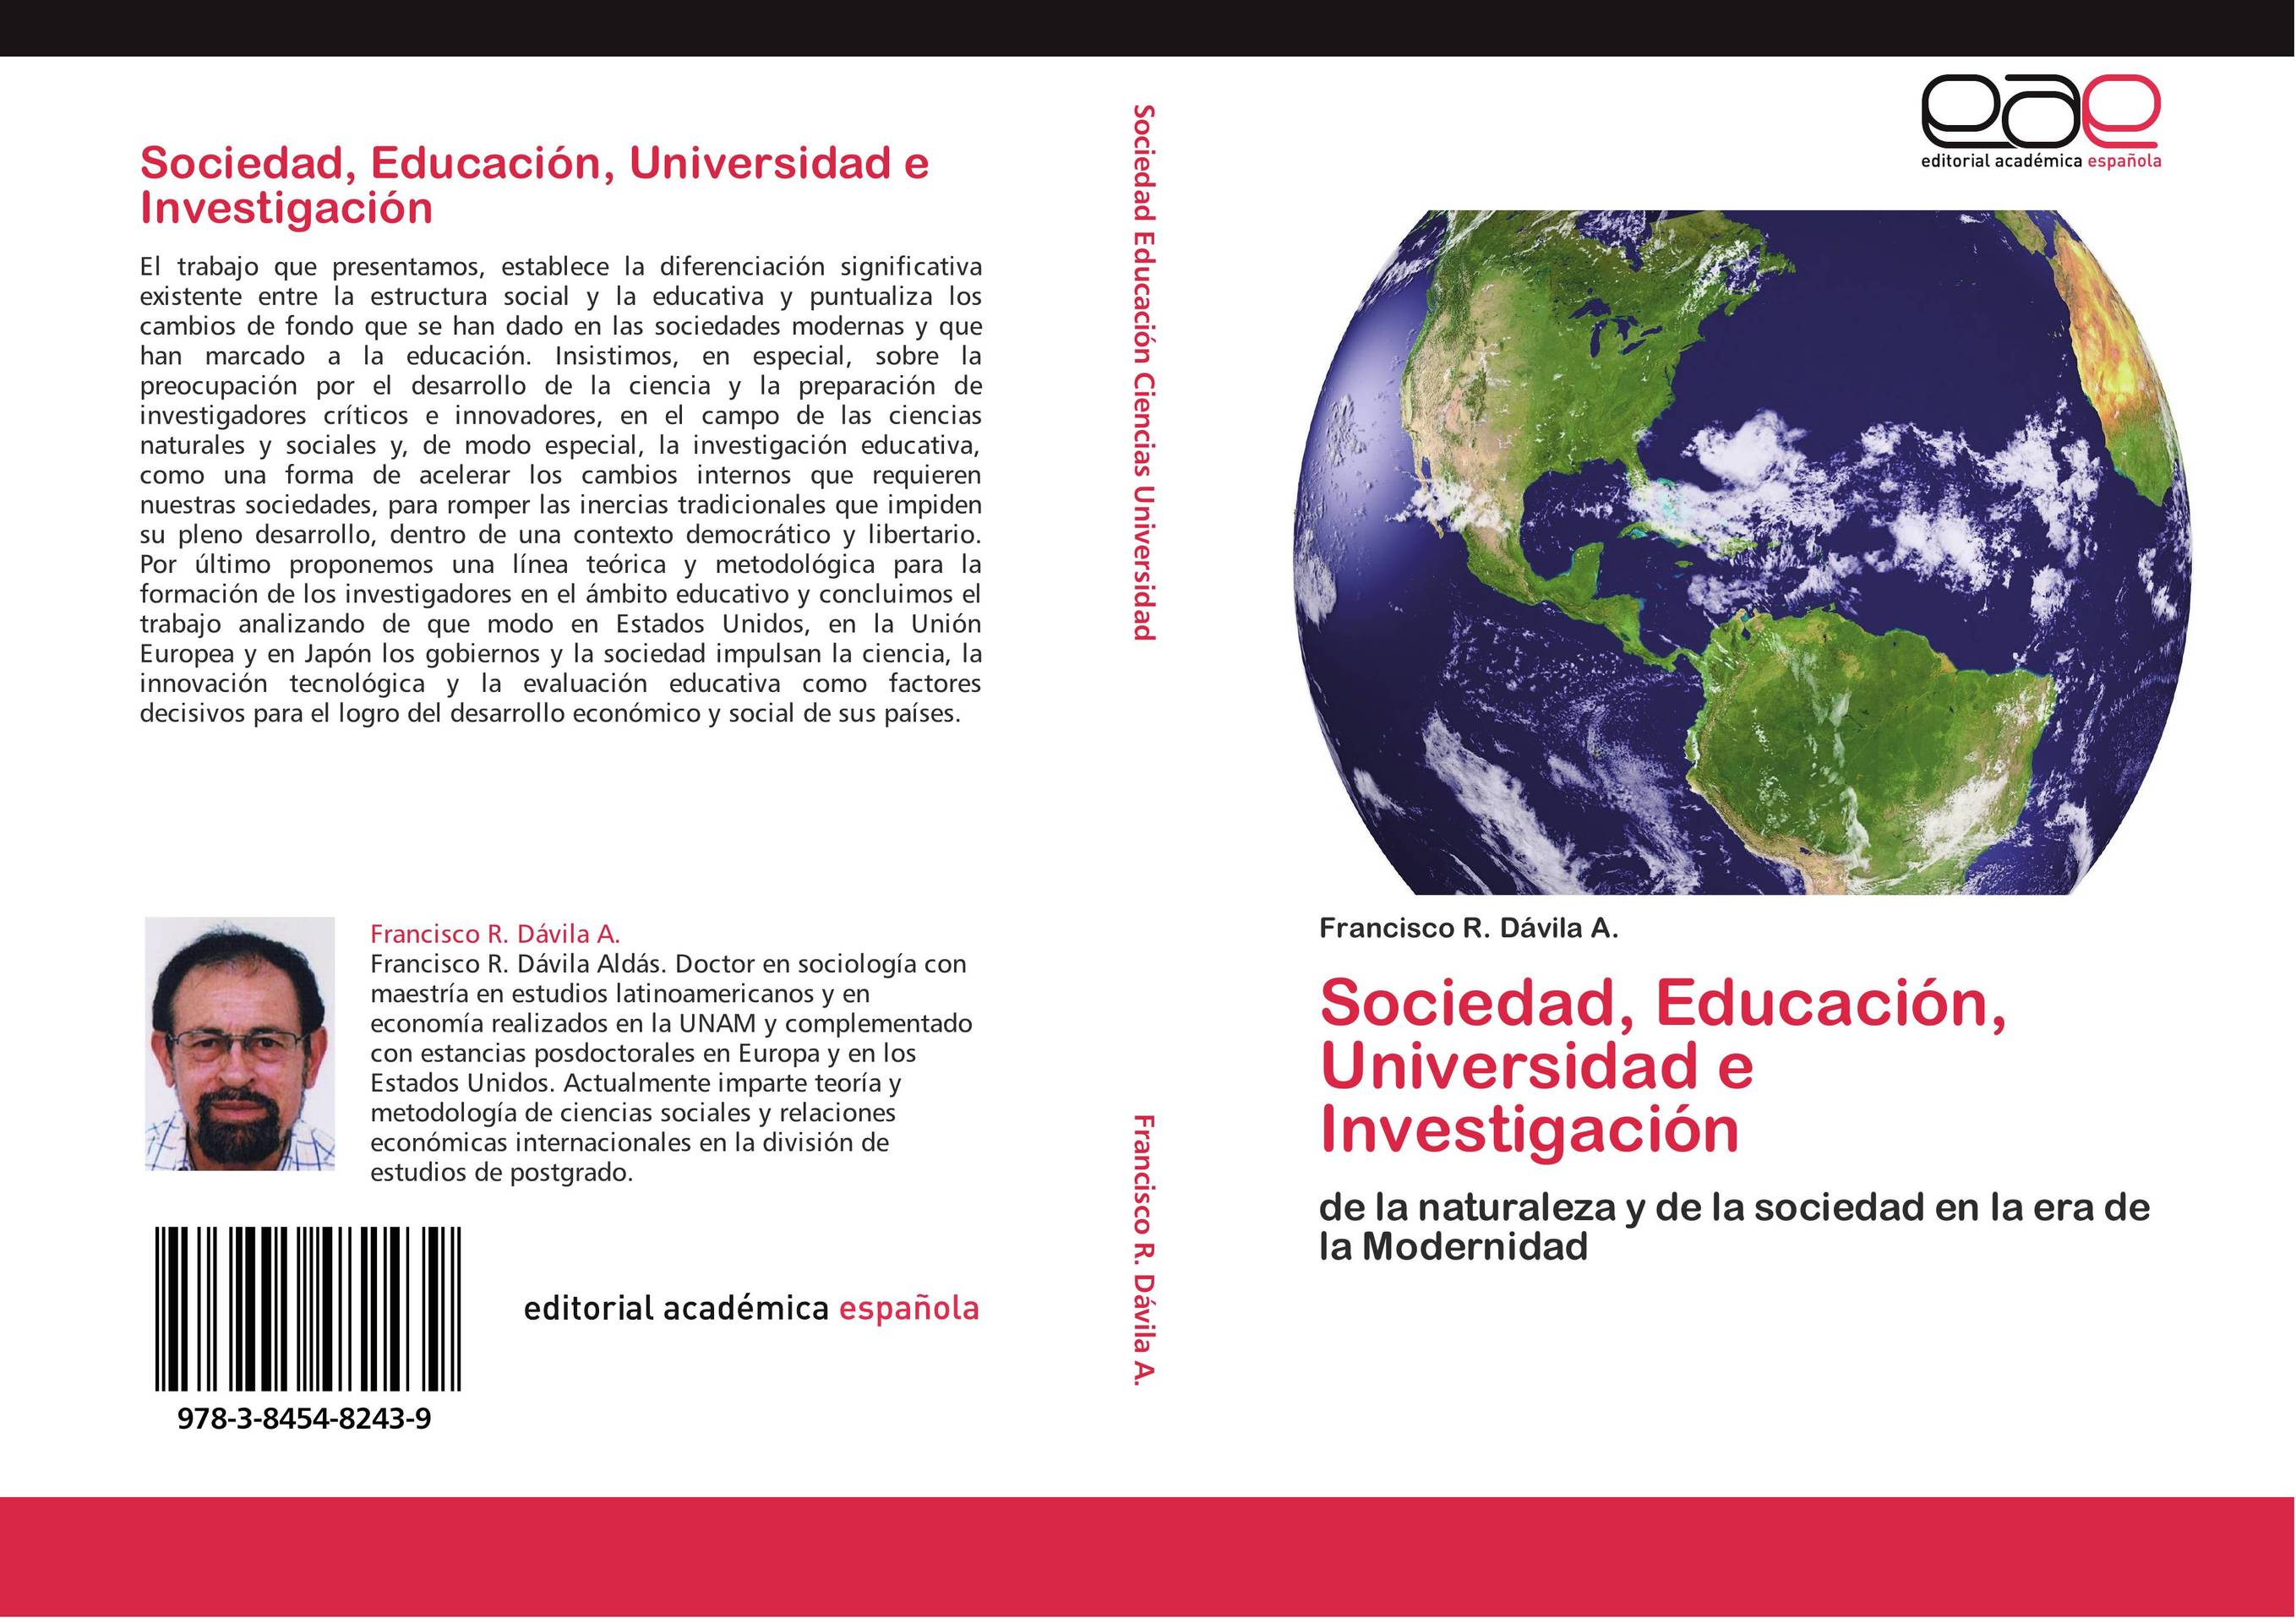 Sociedad, Educación, Universidad e Investigación